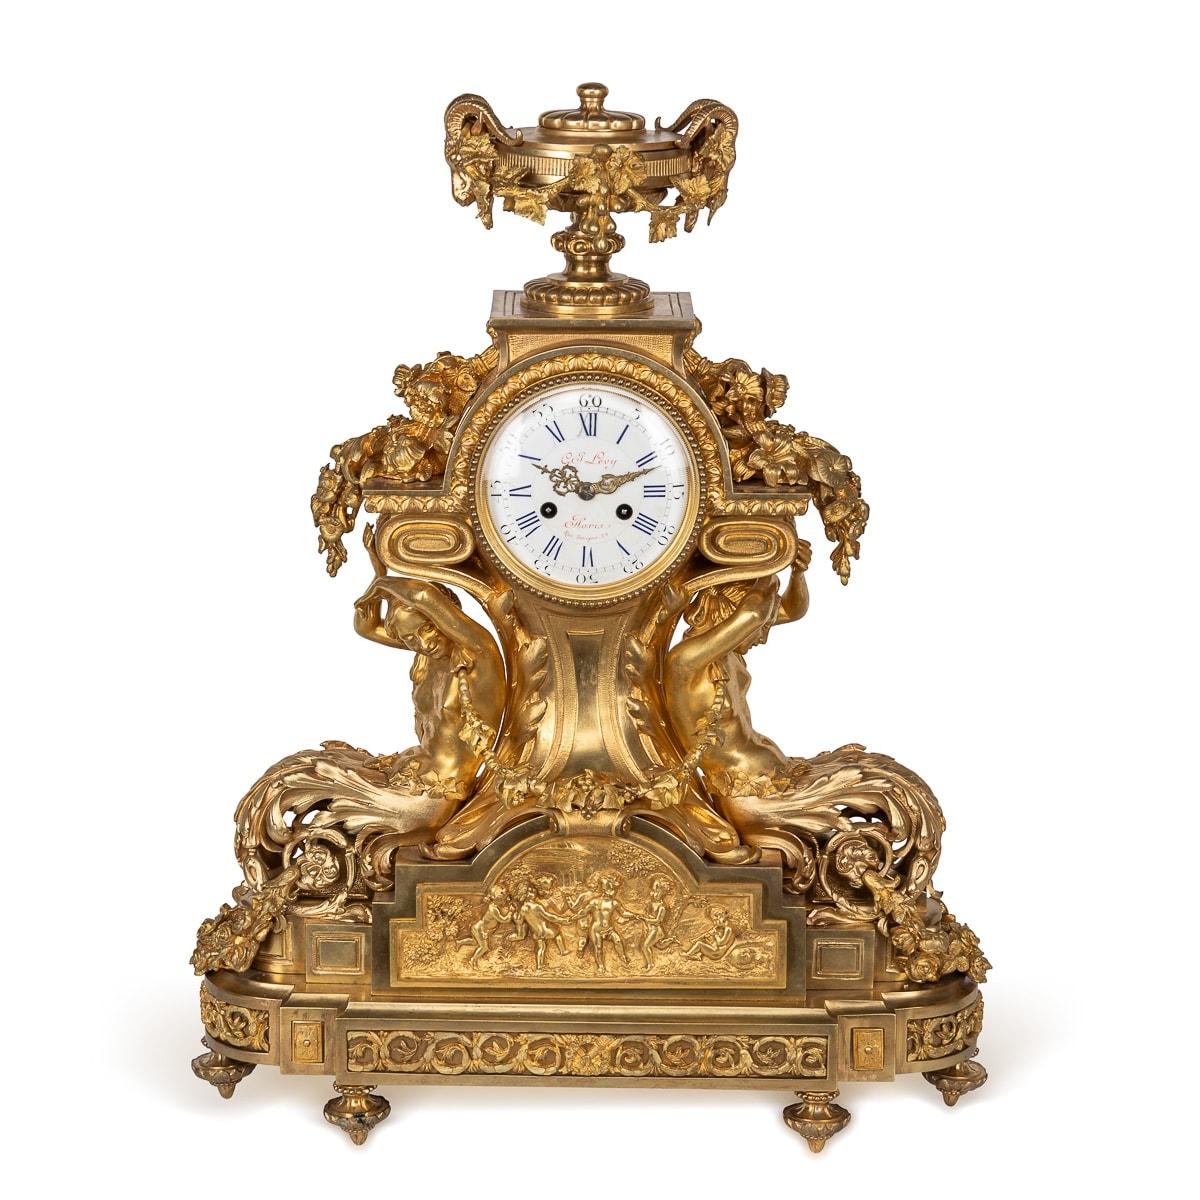 Garniture française ancienne du XIXe siècle, en bronze coulé et doré, un ensemble remarquable comprenant une paire de candélabres à sept lumières et une horloge de cheminée. La pendule est ornée de feuillages et couronnée de deux têtes de bélier